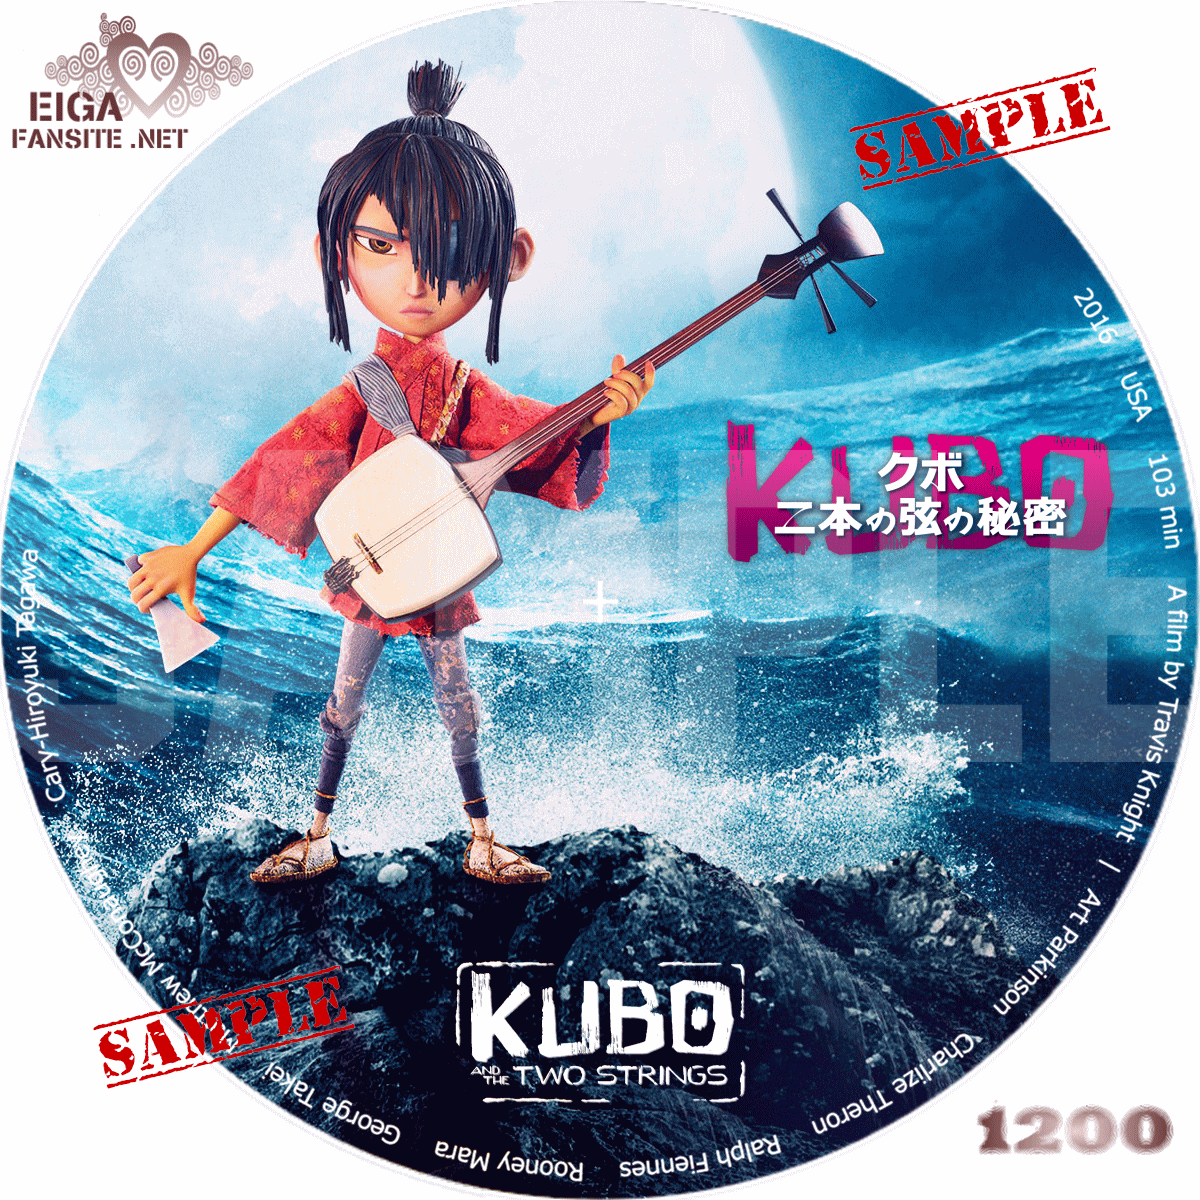 DVDラベル】KUBO クボ 二本の弦の秘密 （アニメ映画）